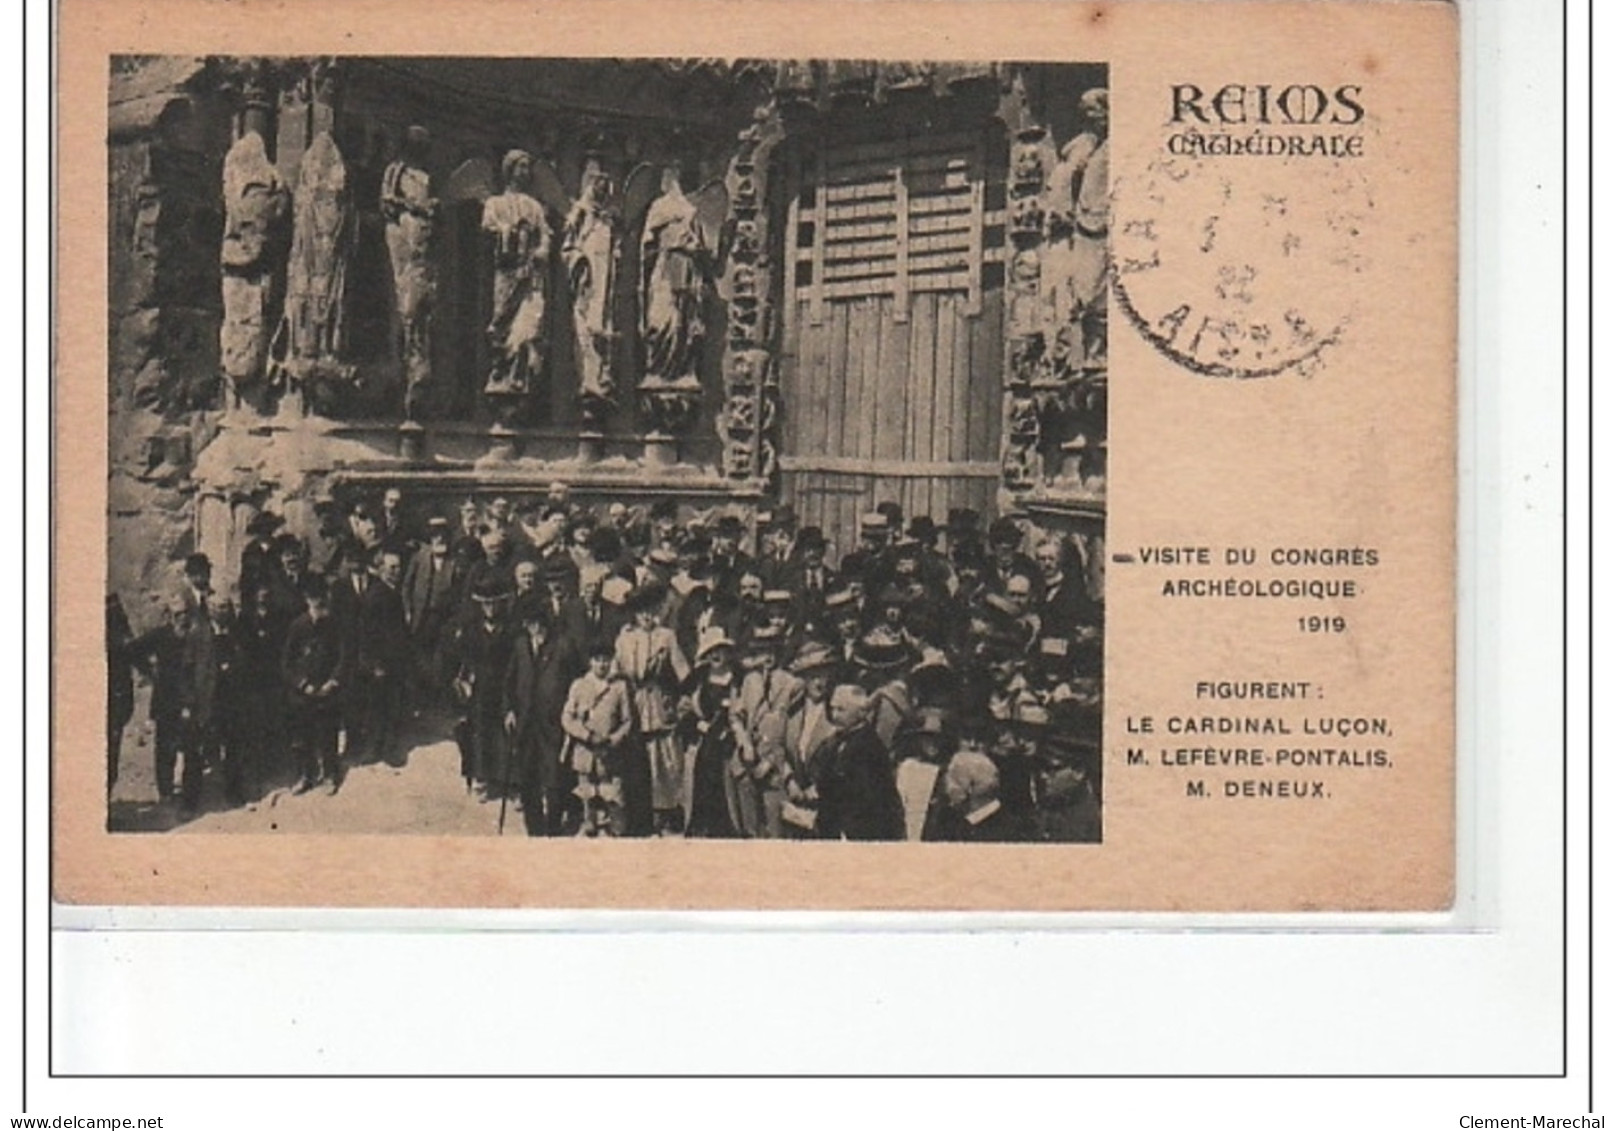 REIMS - Cathédrale - Visite Du Congrès Archéologique 1919 - Très Bon état - Reims